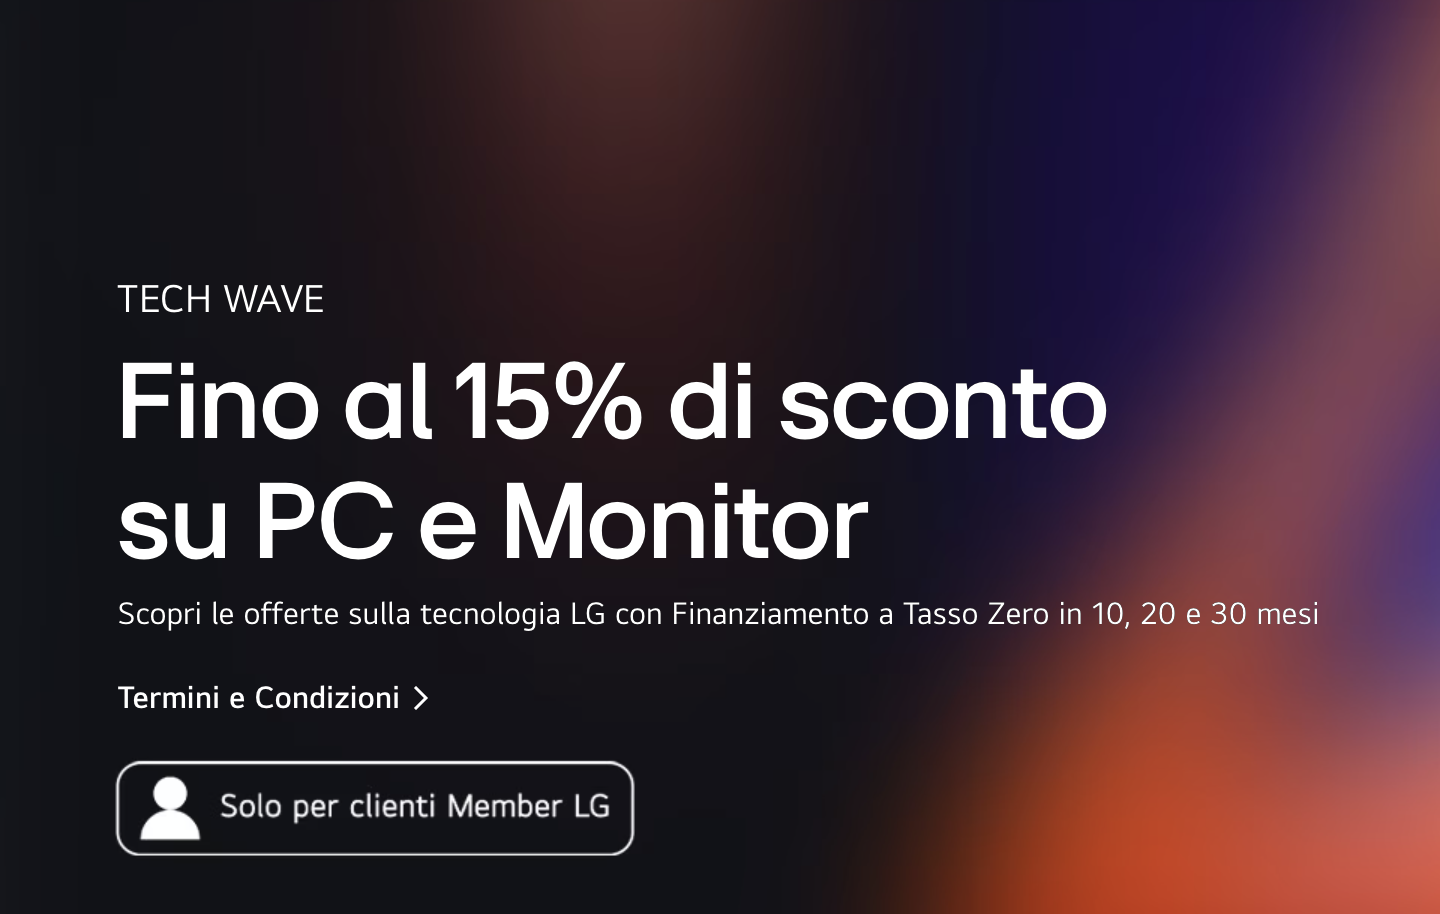 PC e monitor